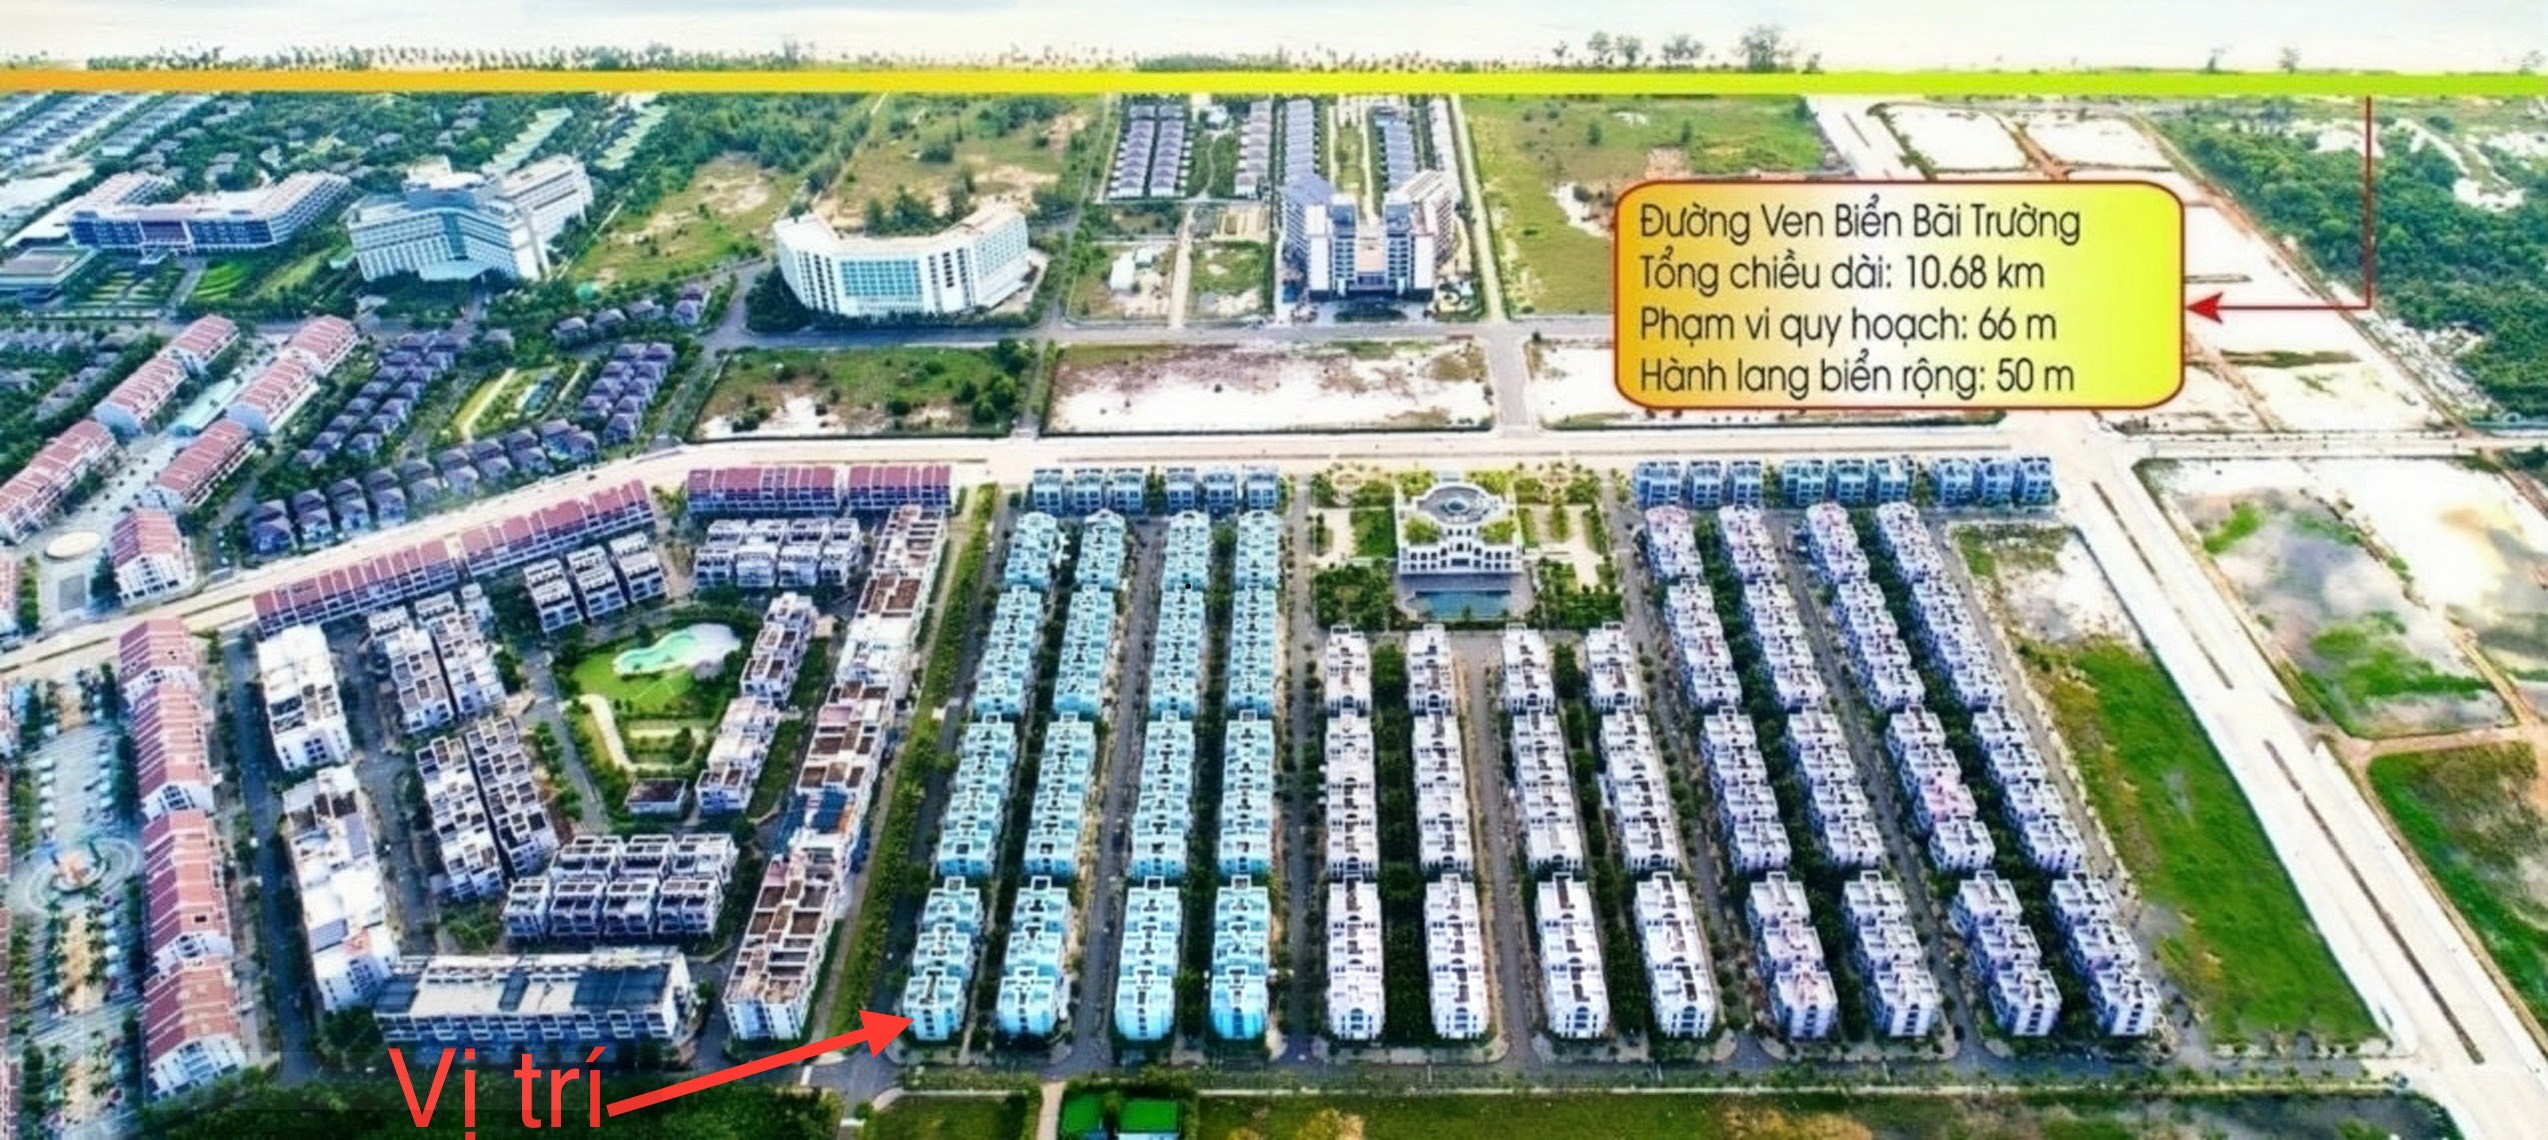 Bán  biệt thự căn góc góc 4 mặt thoáng  trung tâm Bãi Trường  Phú Quốc - CAM KẾT giá tốt nhất thị 1